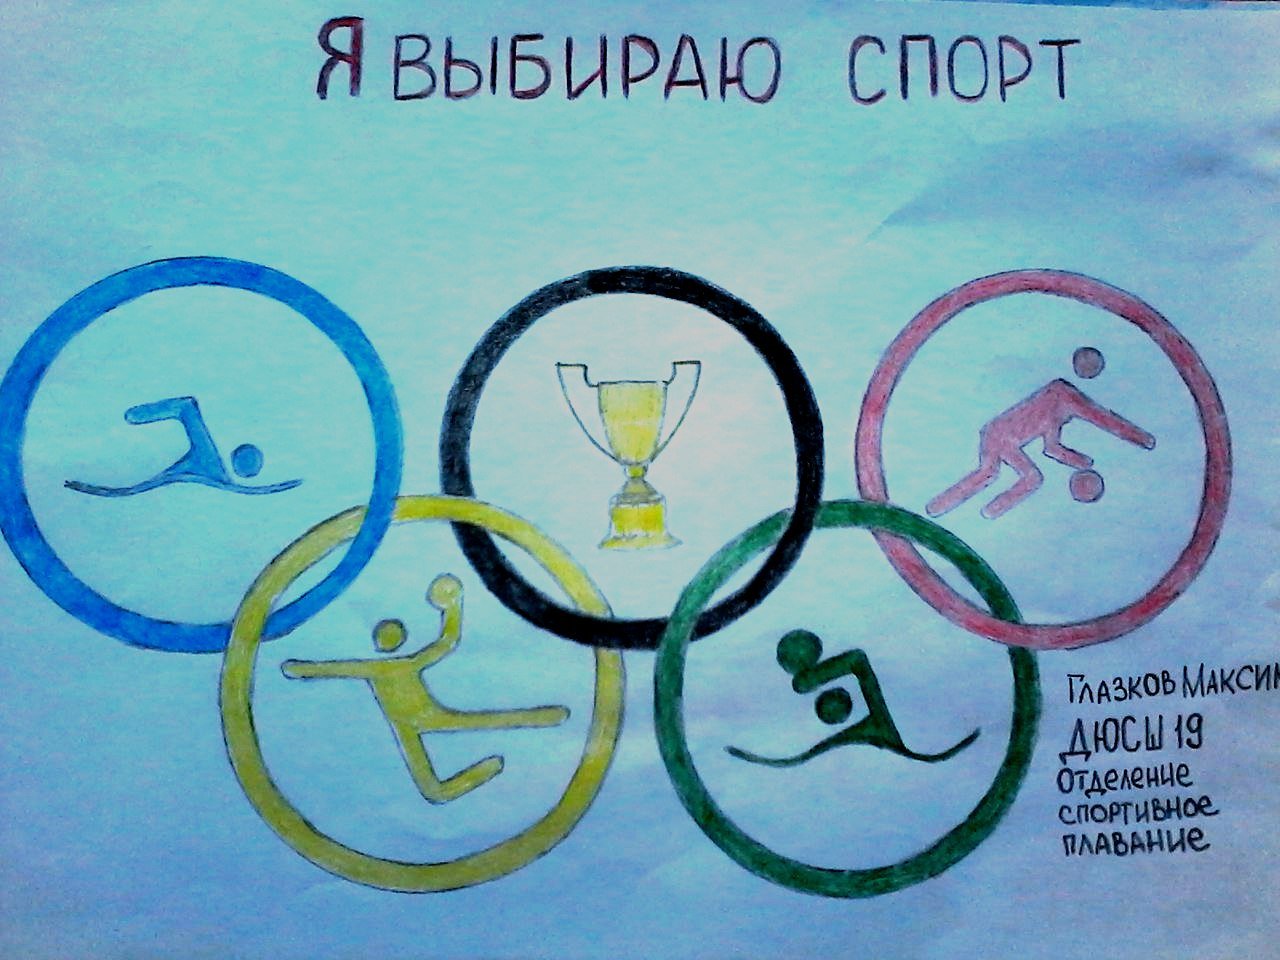 Я участвую в здоровой олимпиаде. Здоровый образ жизни рисунок. Плакат на спортивную тему. Рисунок на тему спорт здоровый образ жизни. Здоровье образ жизни рисунок.